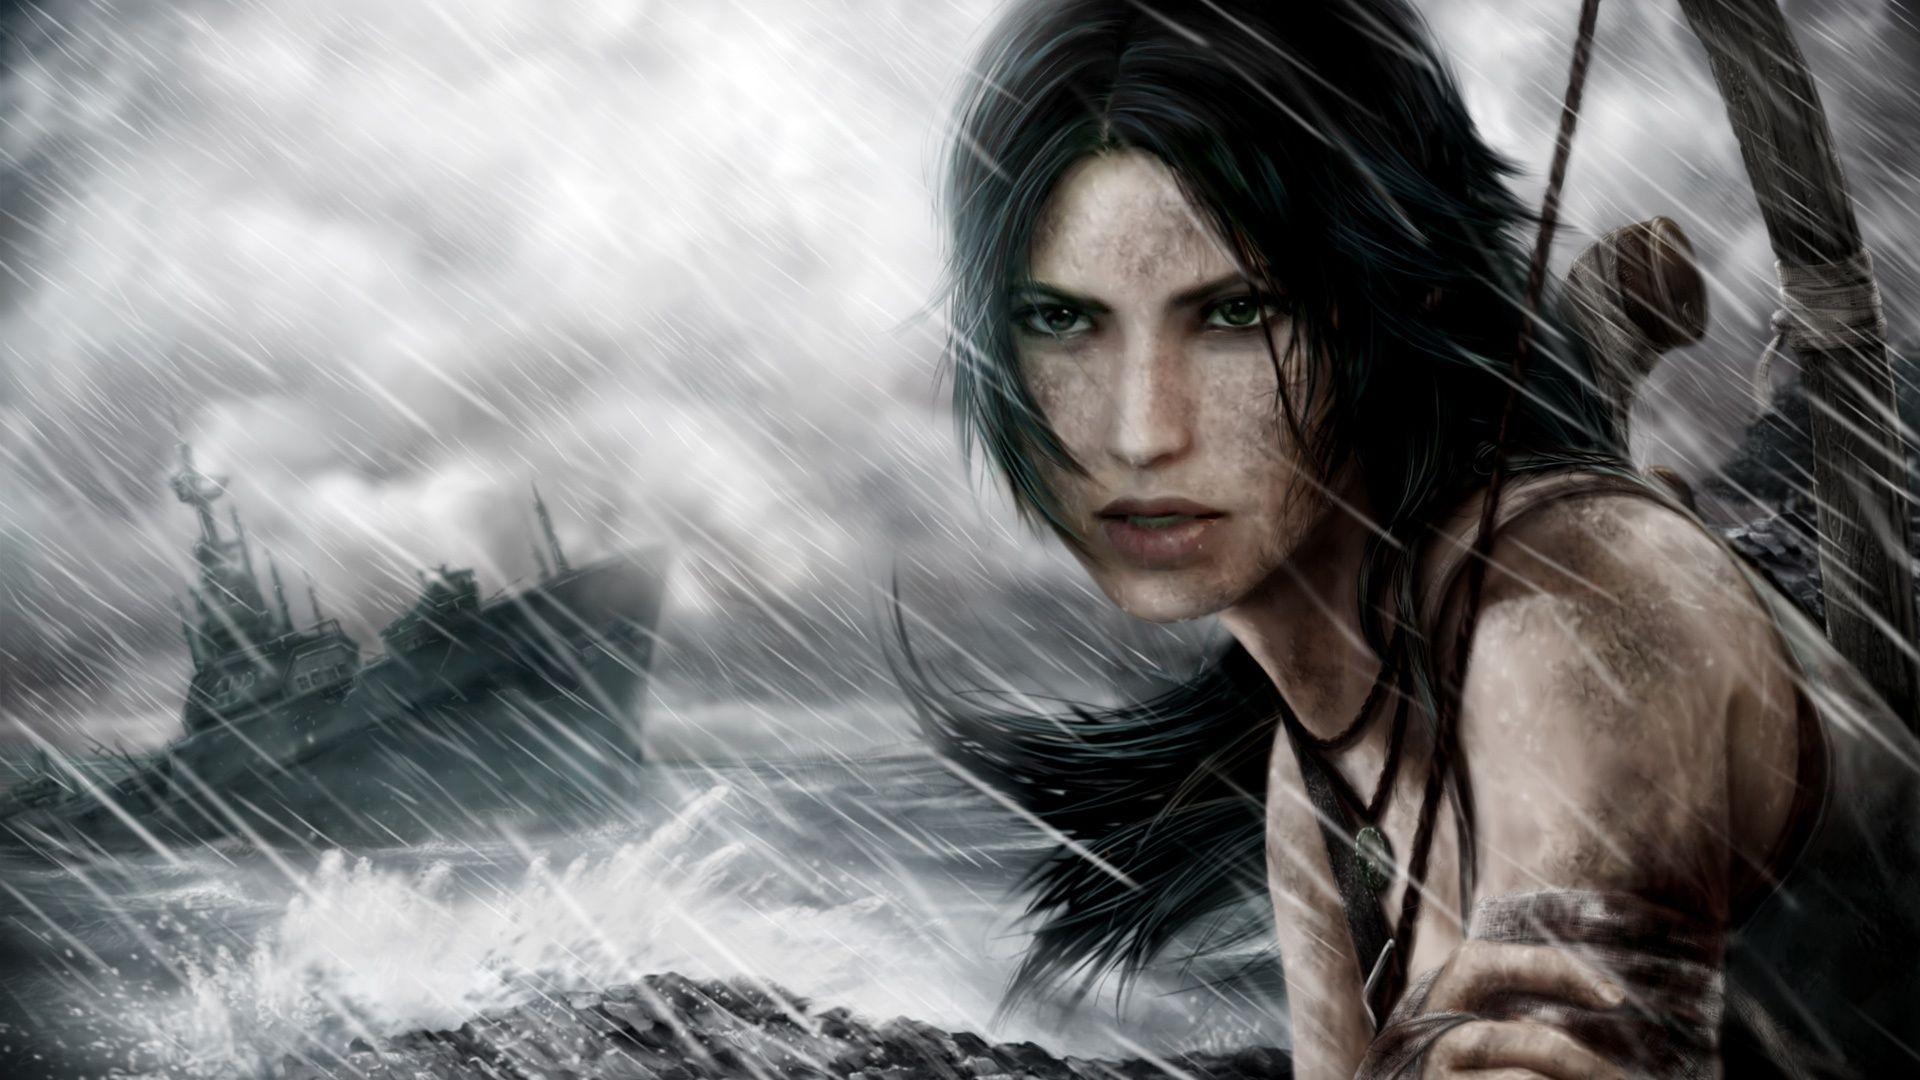 Wallpaper Tomb Raider, Lara Croft, storm day 1920x1080 Full HD